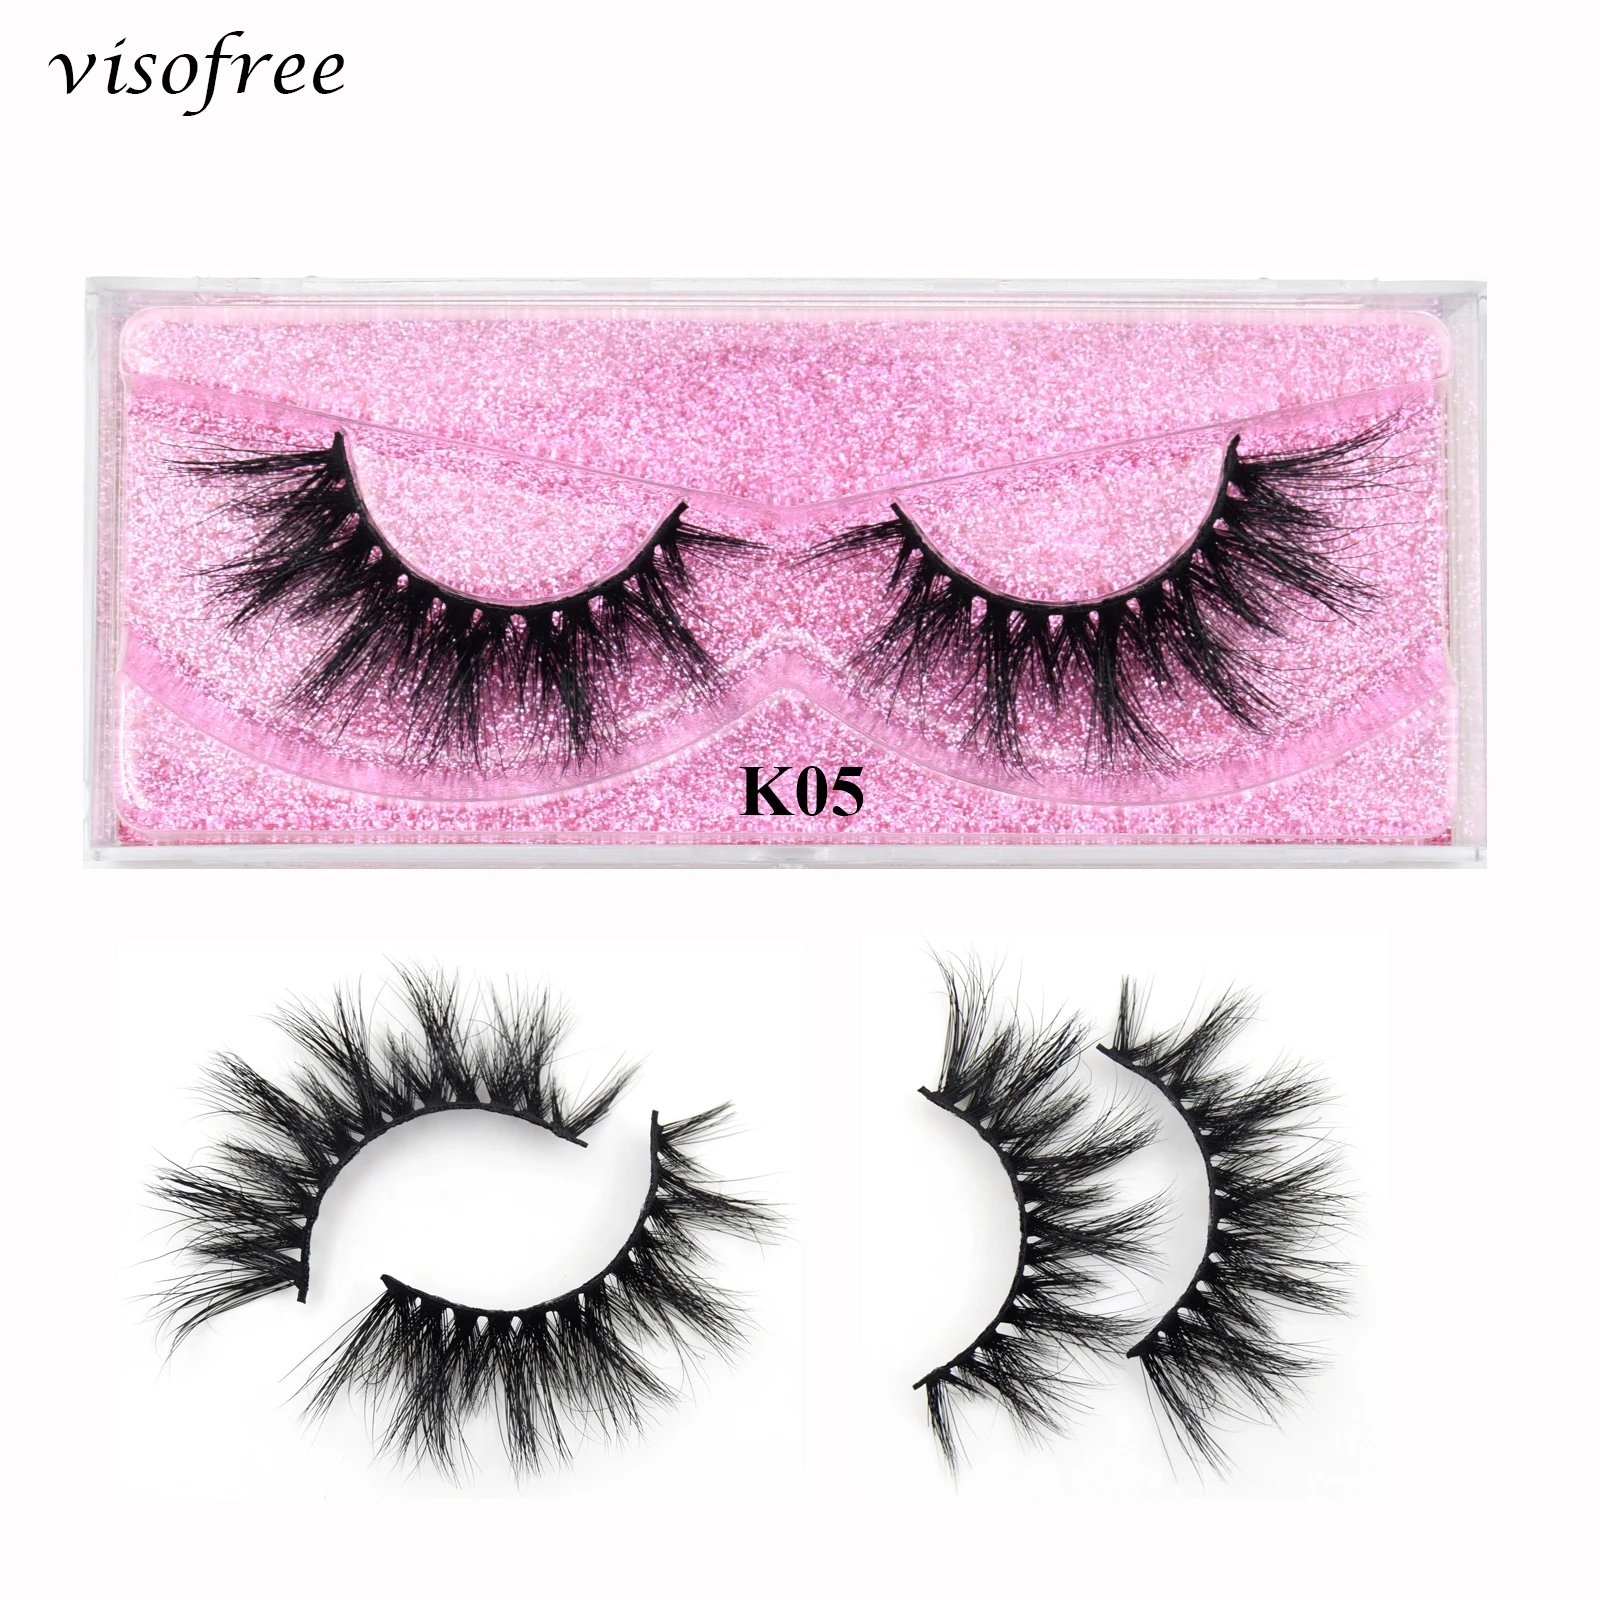 

Visofree Eyelashes Mink Lashes Cruelty Free Reusable Dramatic 3D Mink Lashes Makeup Eyelash Extension False Eyelashes Cilios K05